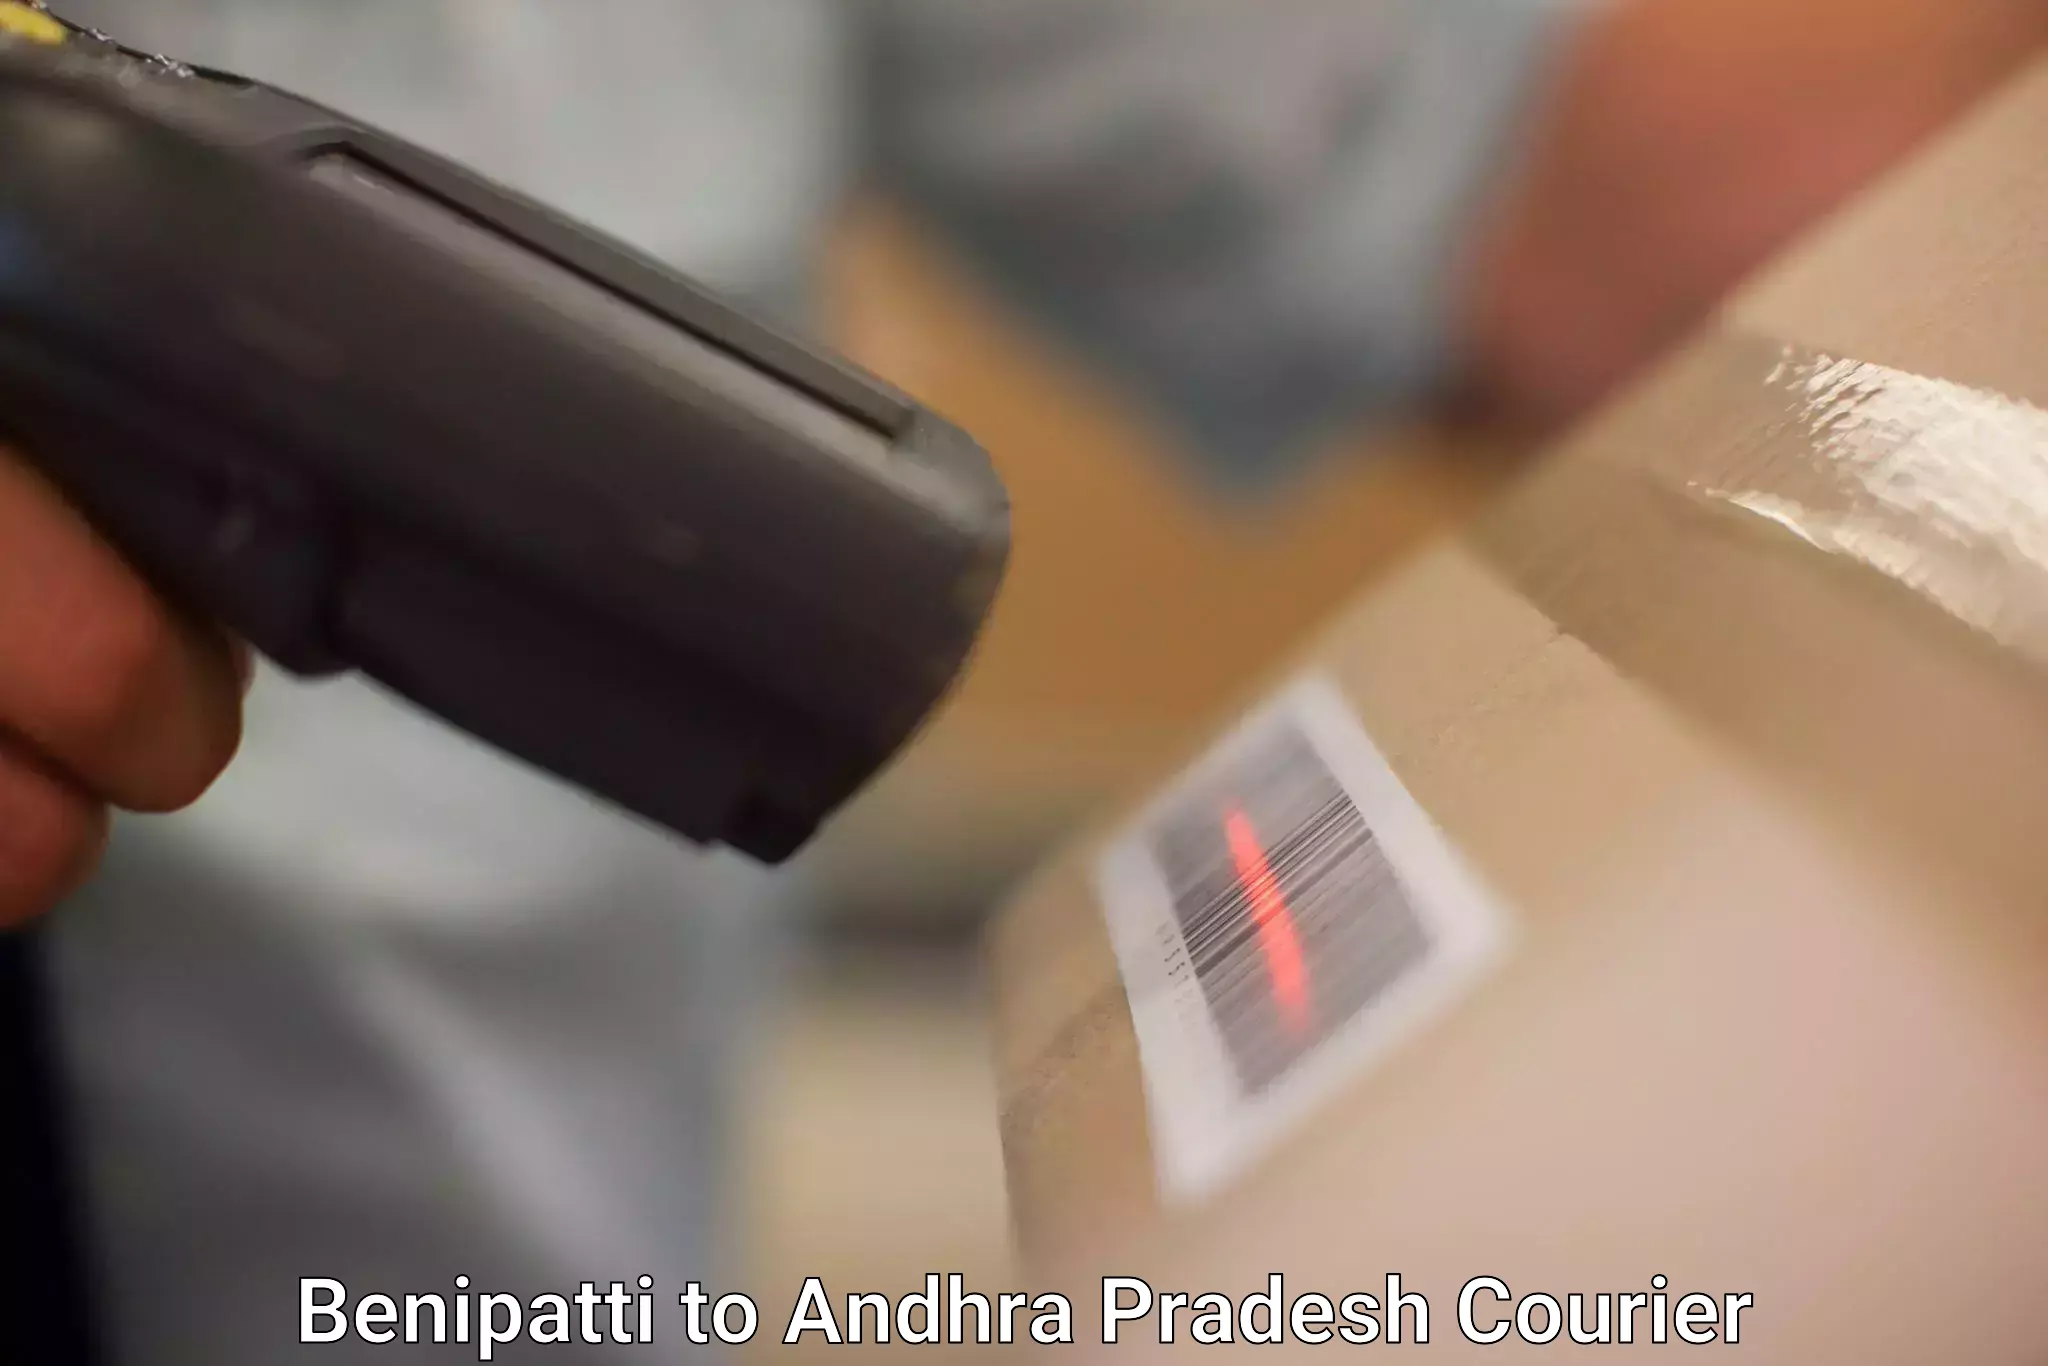 Courier service comparison Benipatti to Hindupur